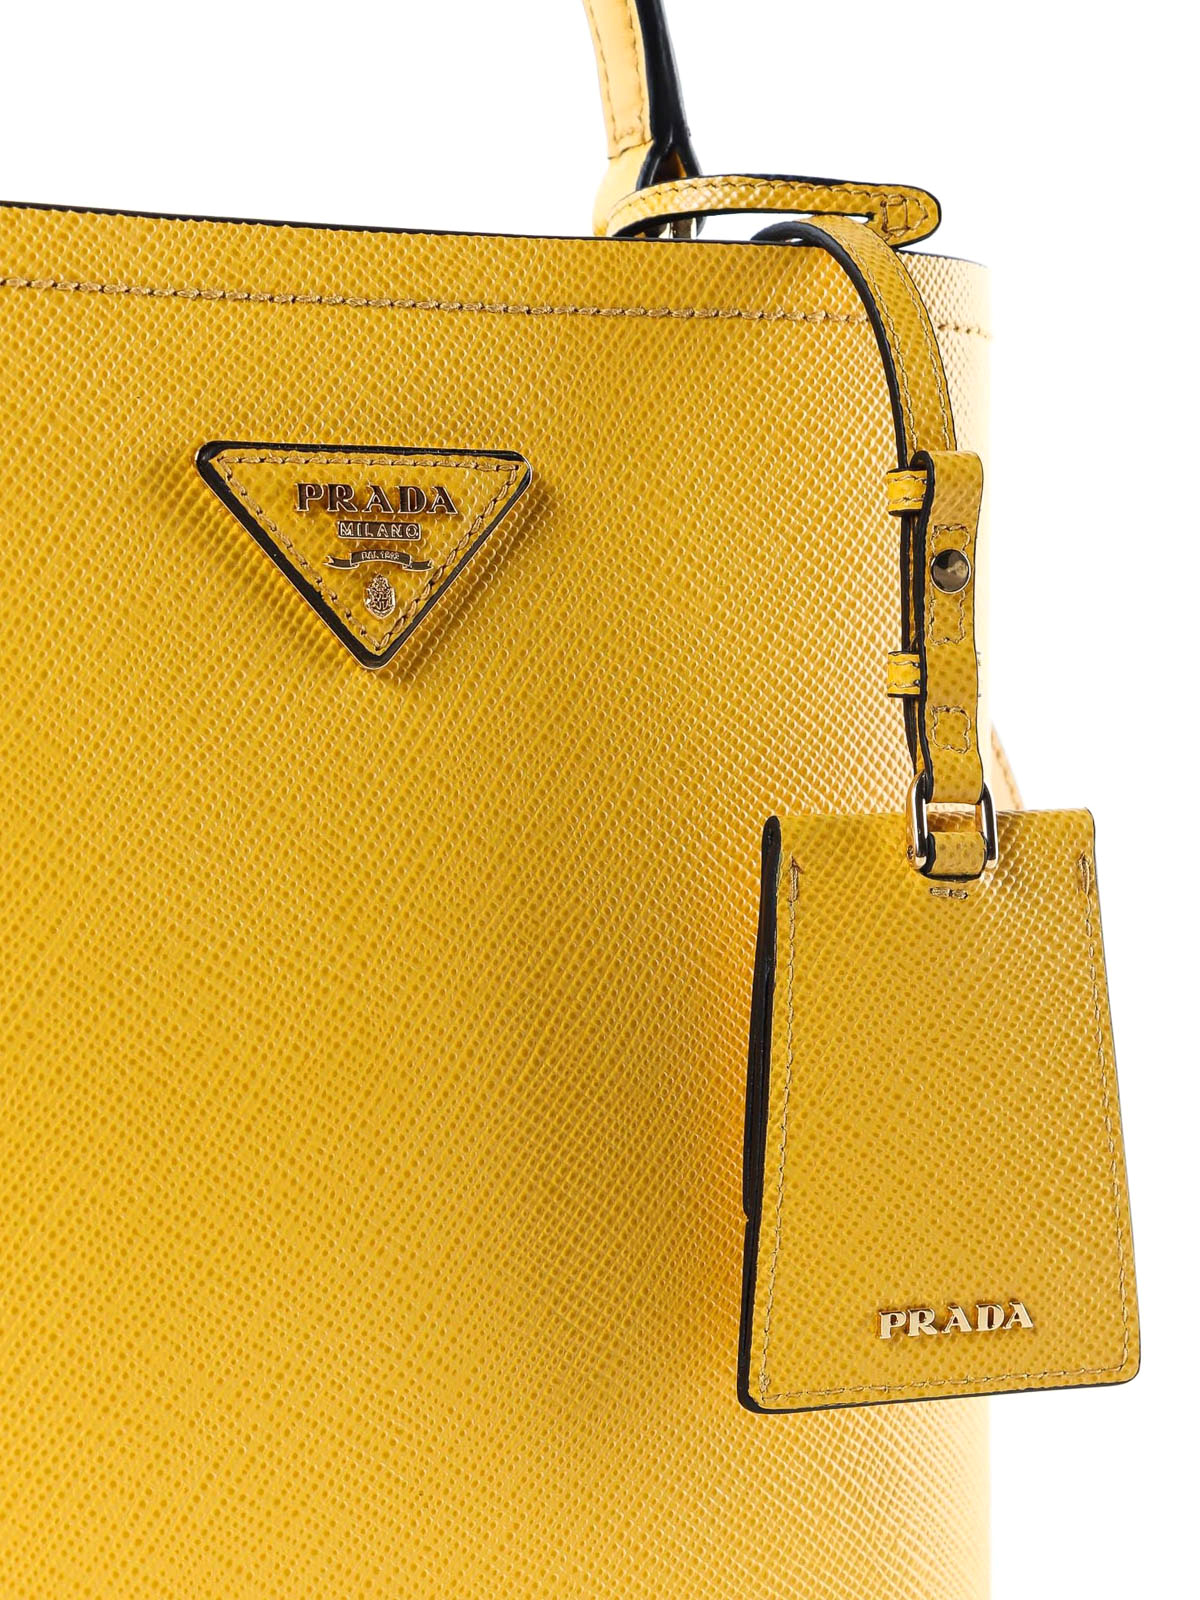 Bucket bags Prada - Yellow Saffiano leather double bucket bag -  1BA2122ERXCF3